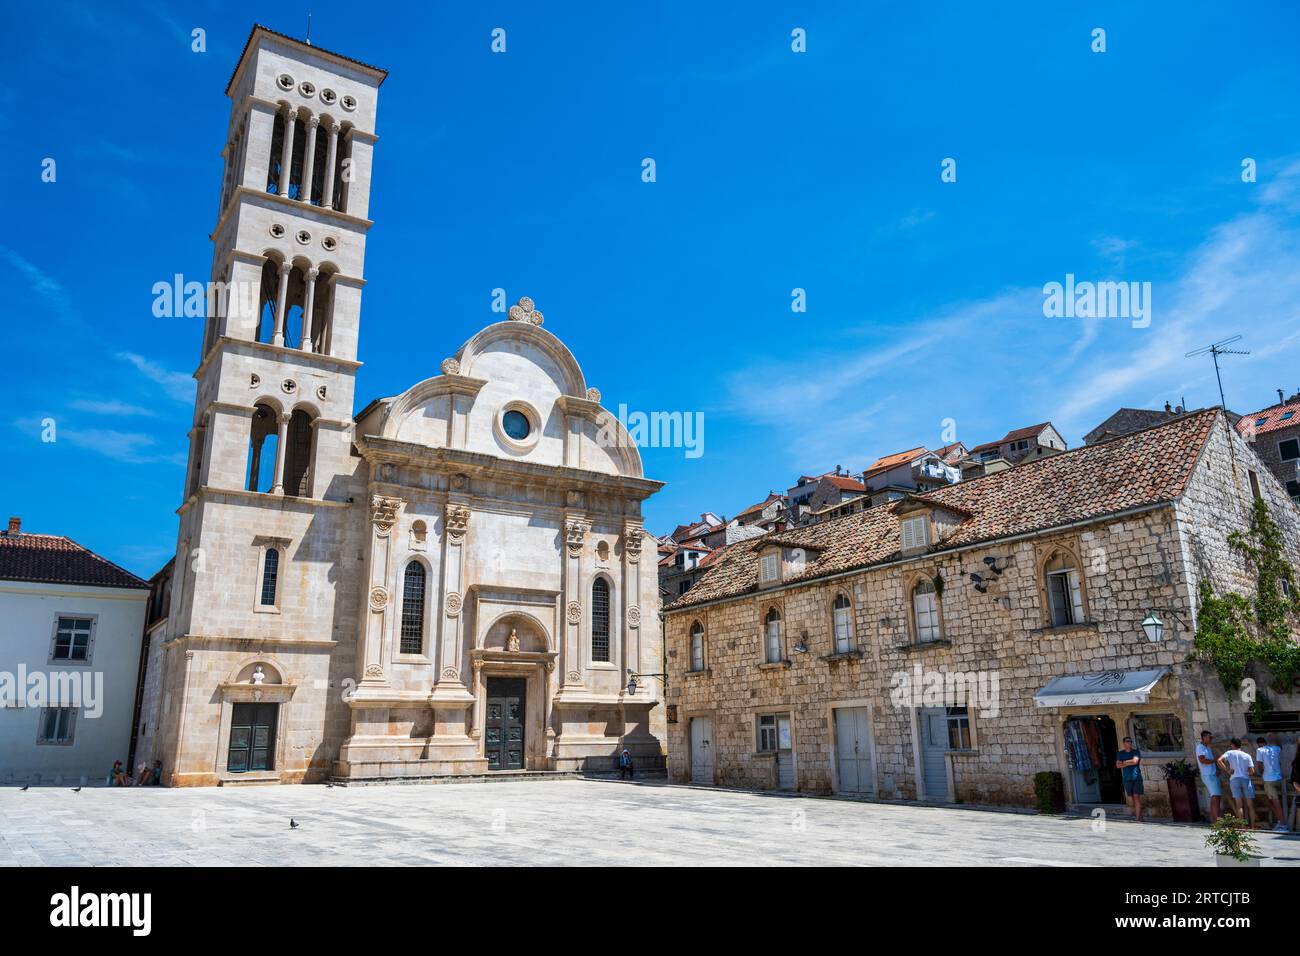 Blick auf die Stephansdom auf der Ostseite des Hauptplatzes der Stadt Hvar (Grad Hvar) auf der Insel Hvar an der dalmatinischen Küste Kroatiens Stockfoto